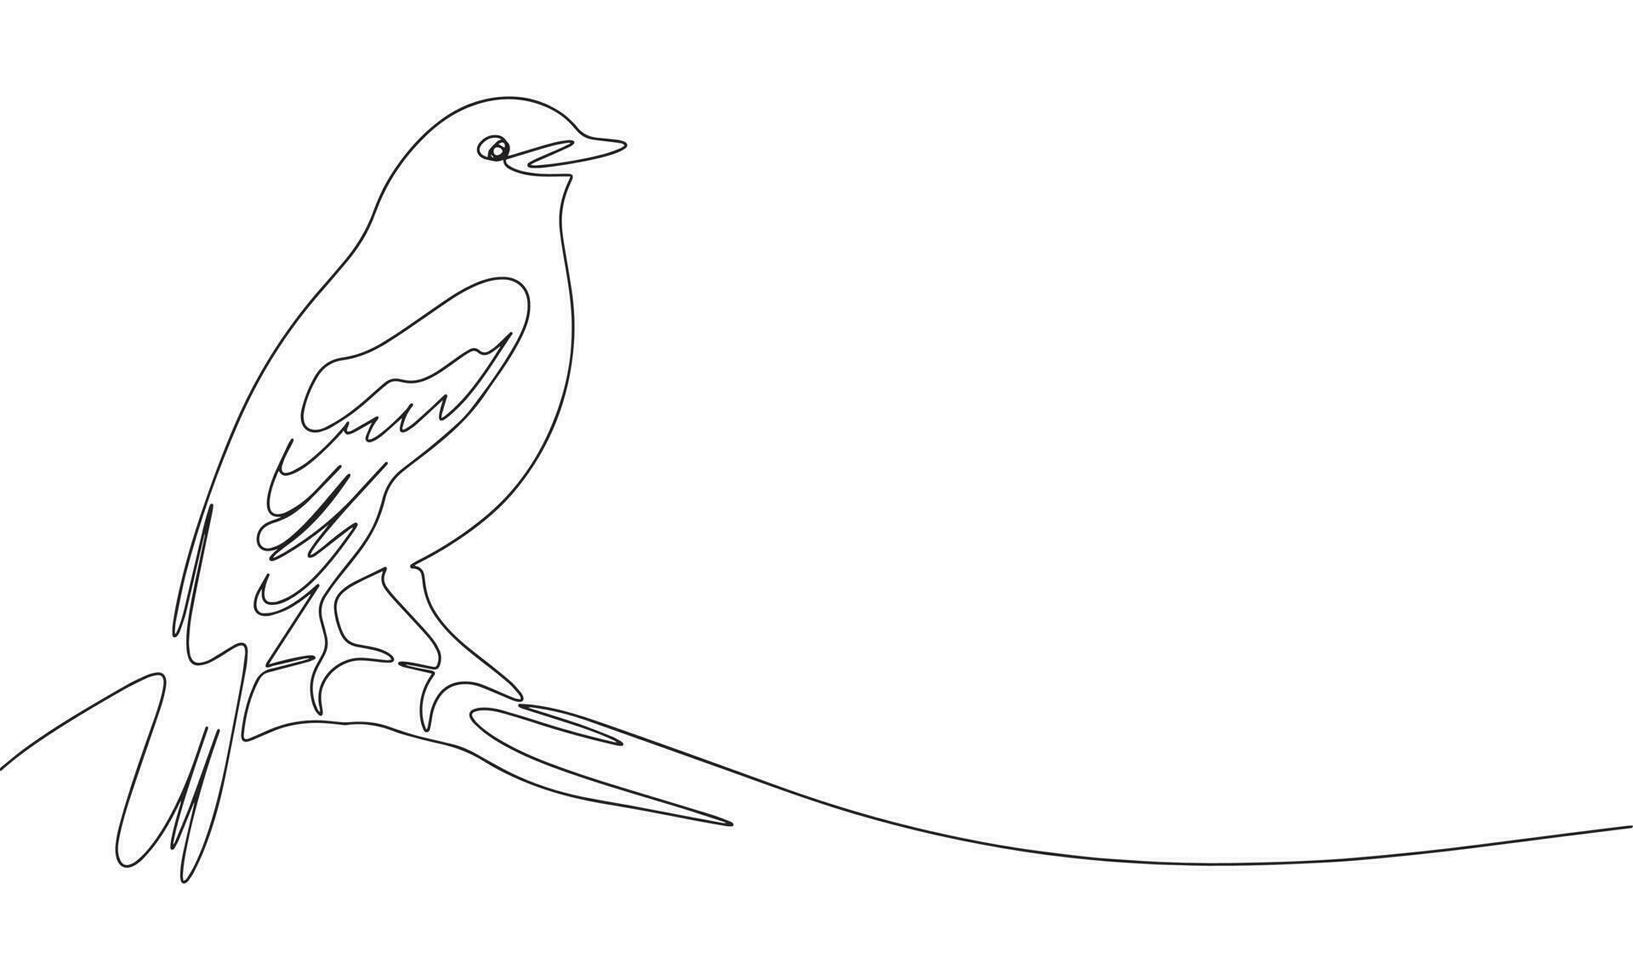 sentado pássaro contínuo linha desenhando elemento isolado em branco fundo para decorativo elemento. vetor ilustração do animal Formato dentro na moda esboço estilo.